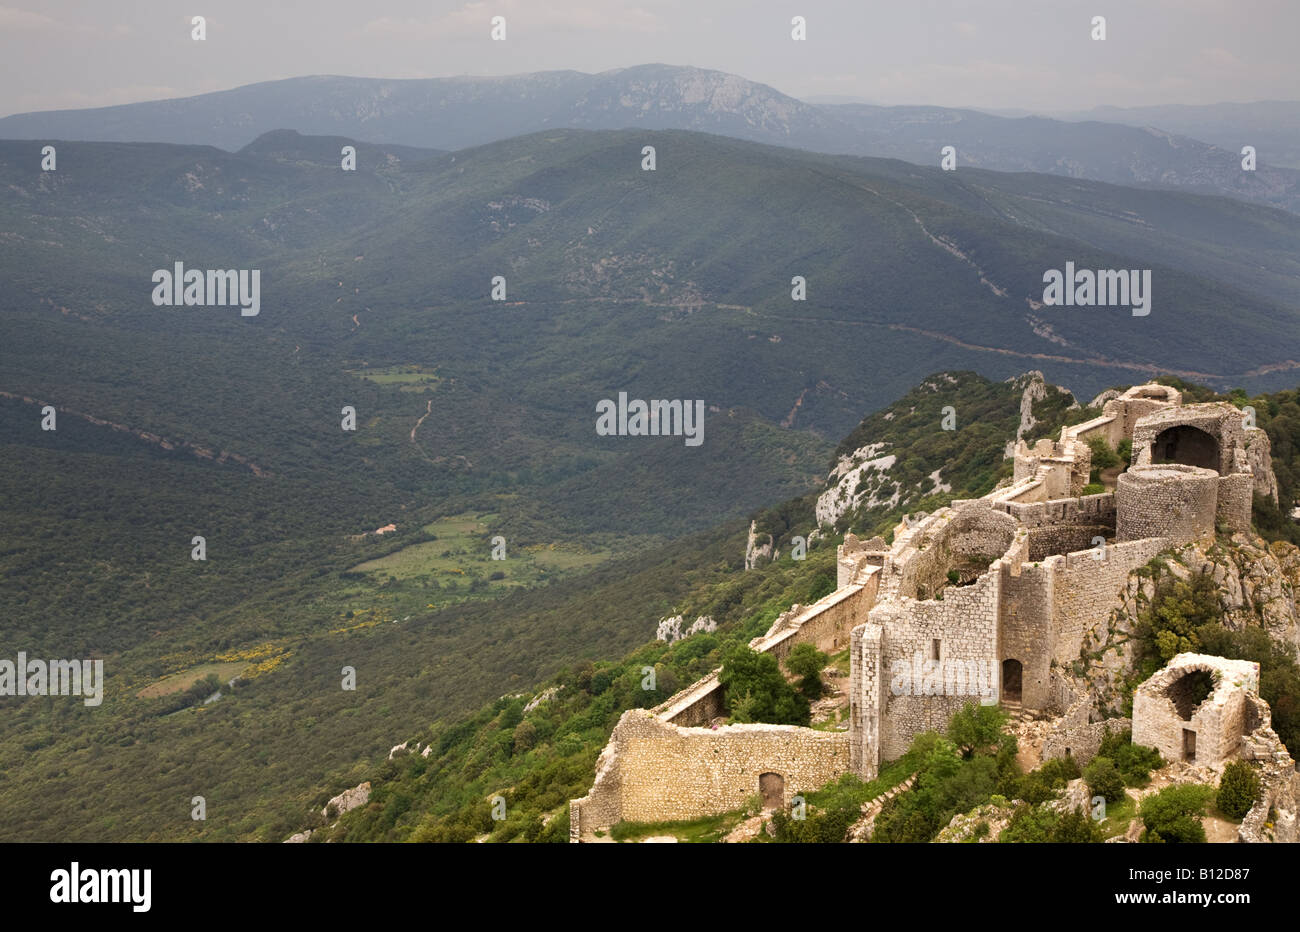 Un paesaggio montuoso vista dalle rovine del castello dei Pirenei francesi Languedoc Roussillon Francia meridionale Foto Stock